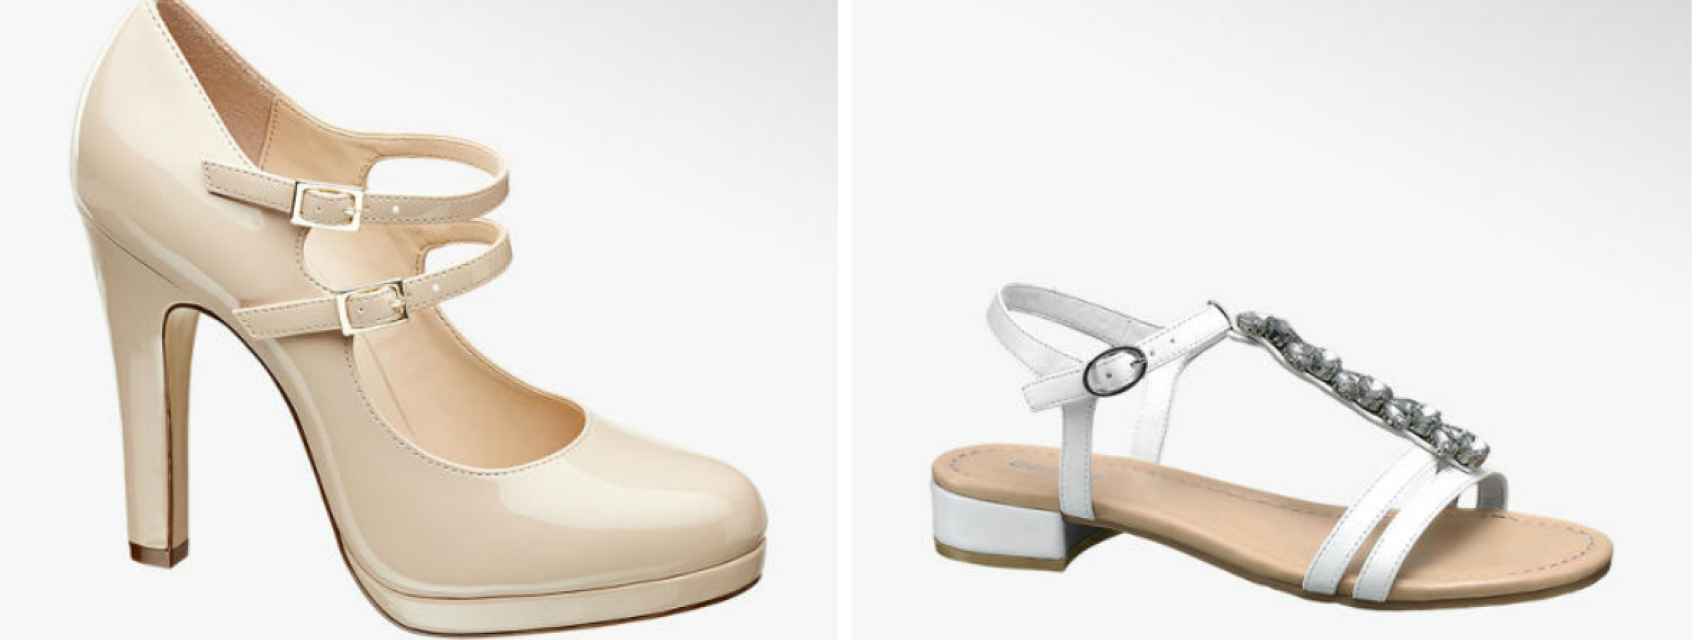 Zapatos para novias de la nueva colección de Deichmann en montaje JALEOS.